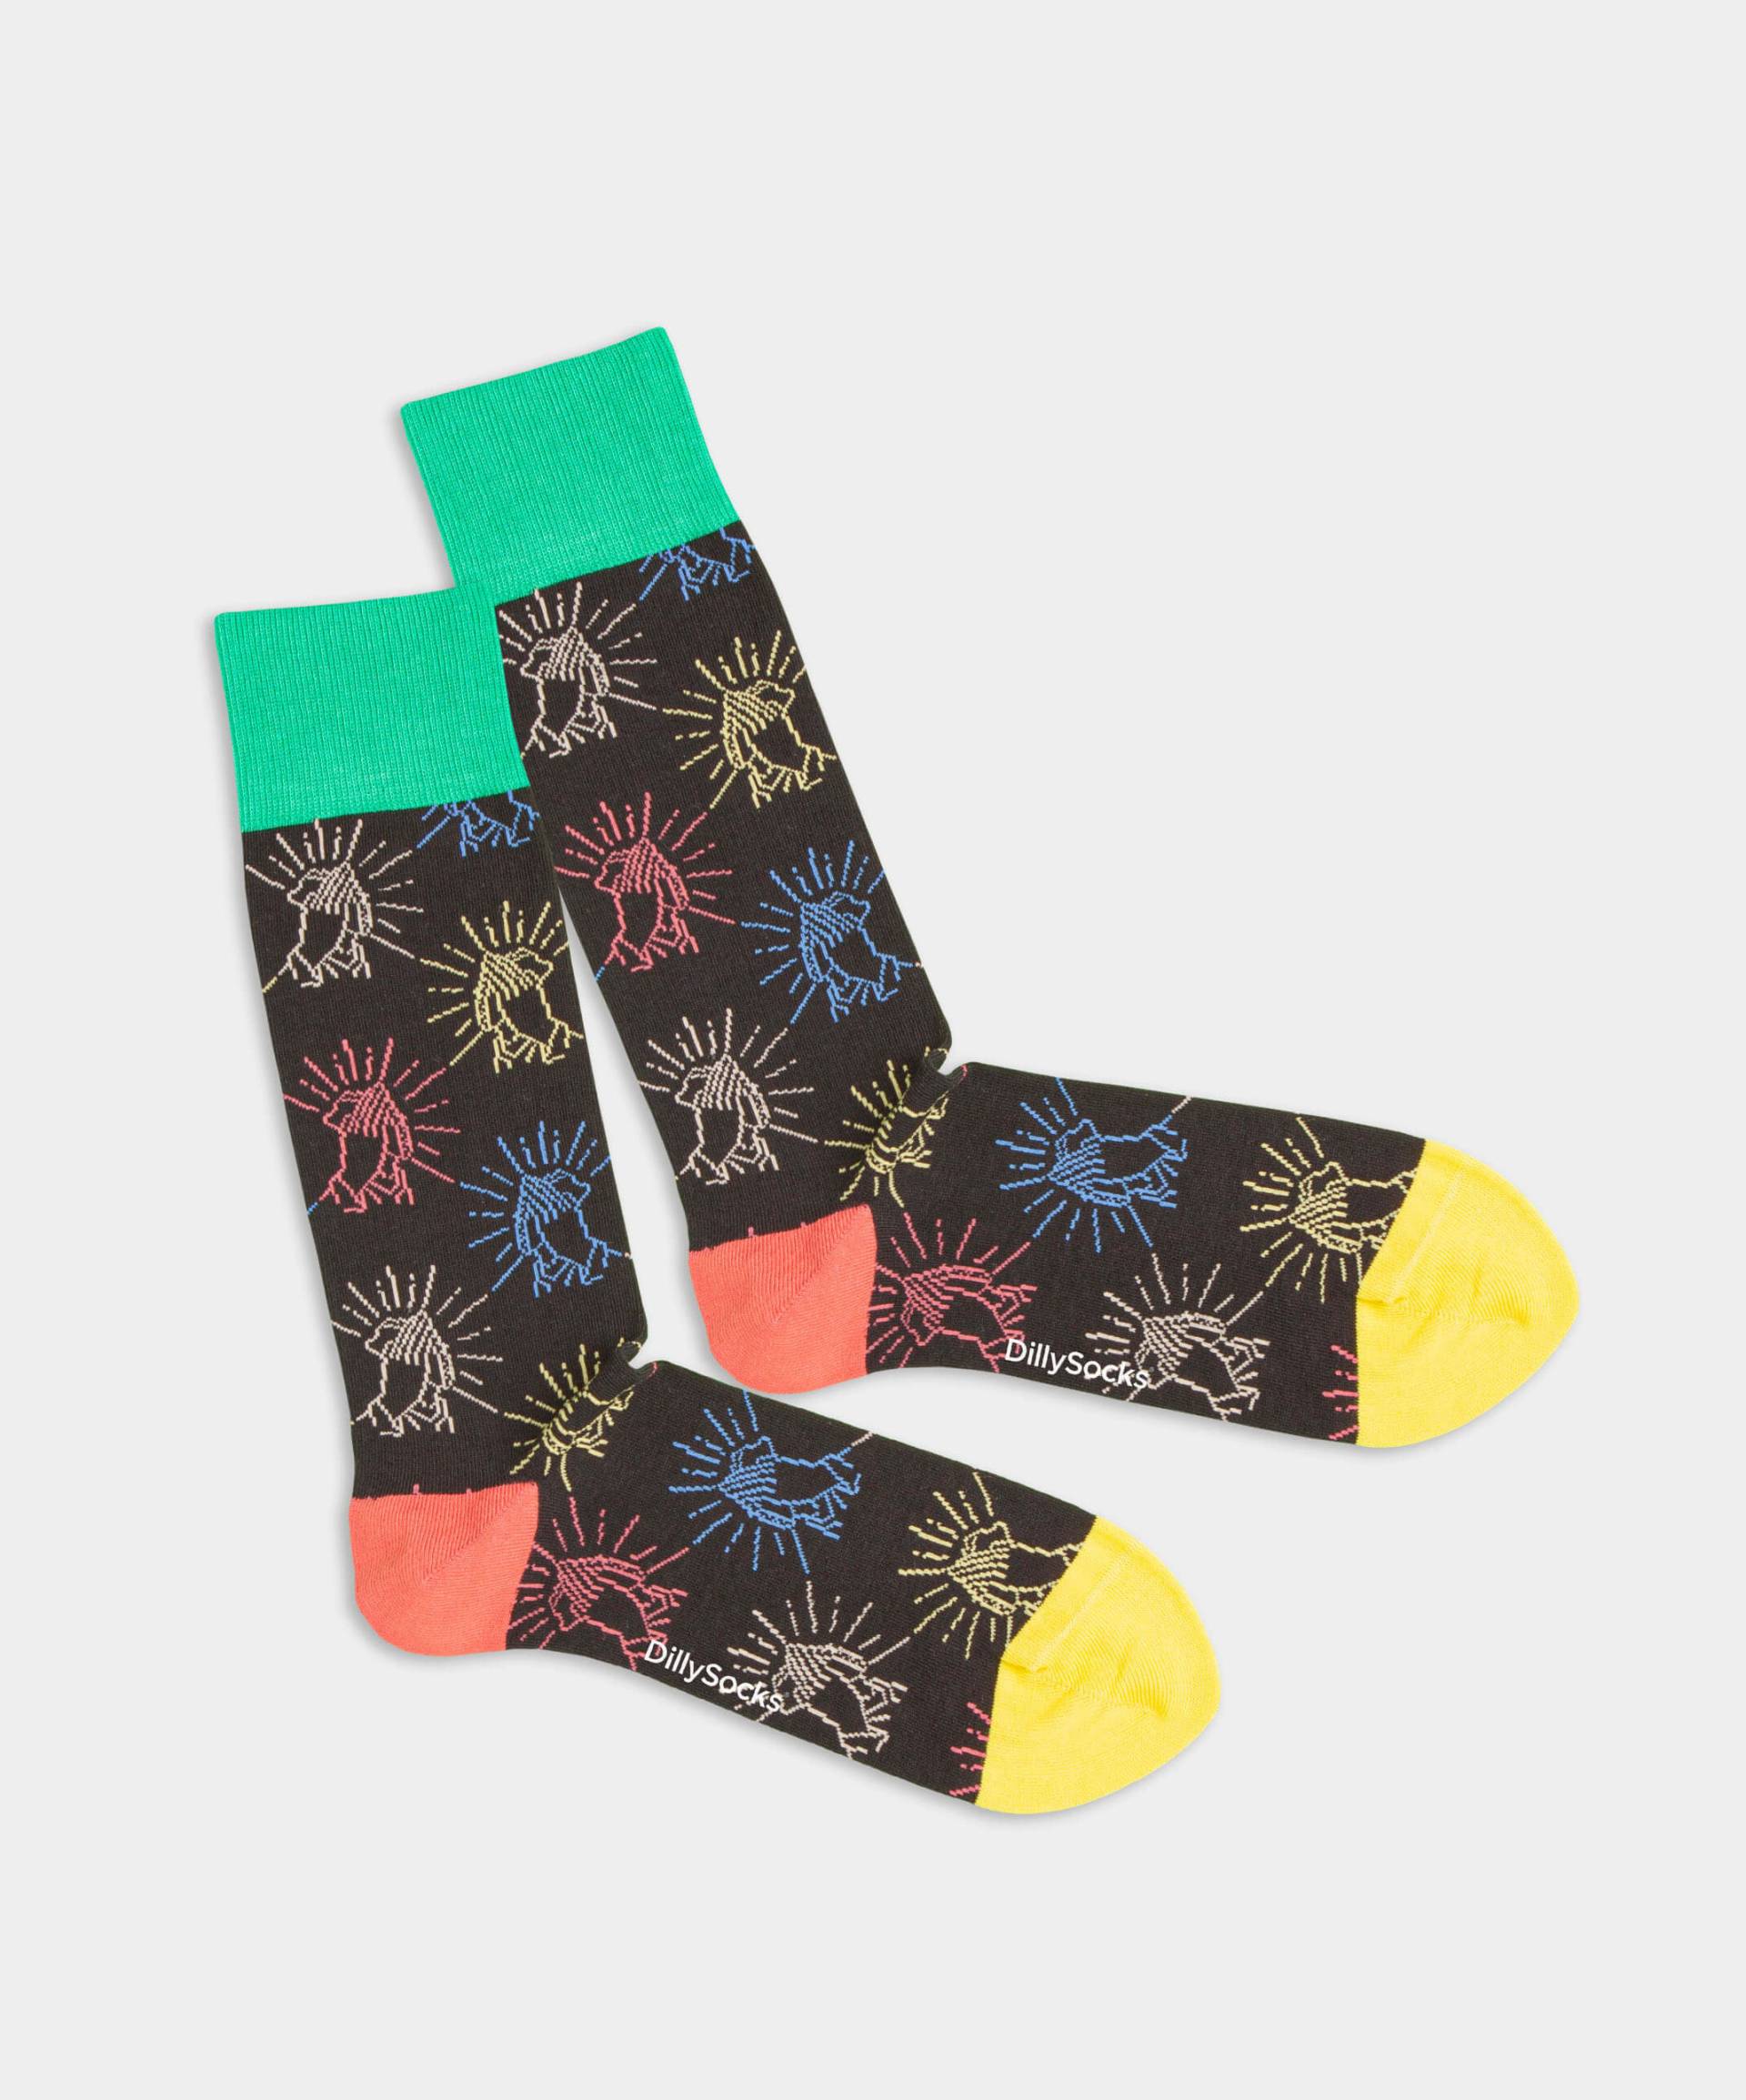 - Socken in Schwarz mit Motiv/Muster von DillySocks